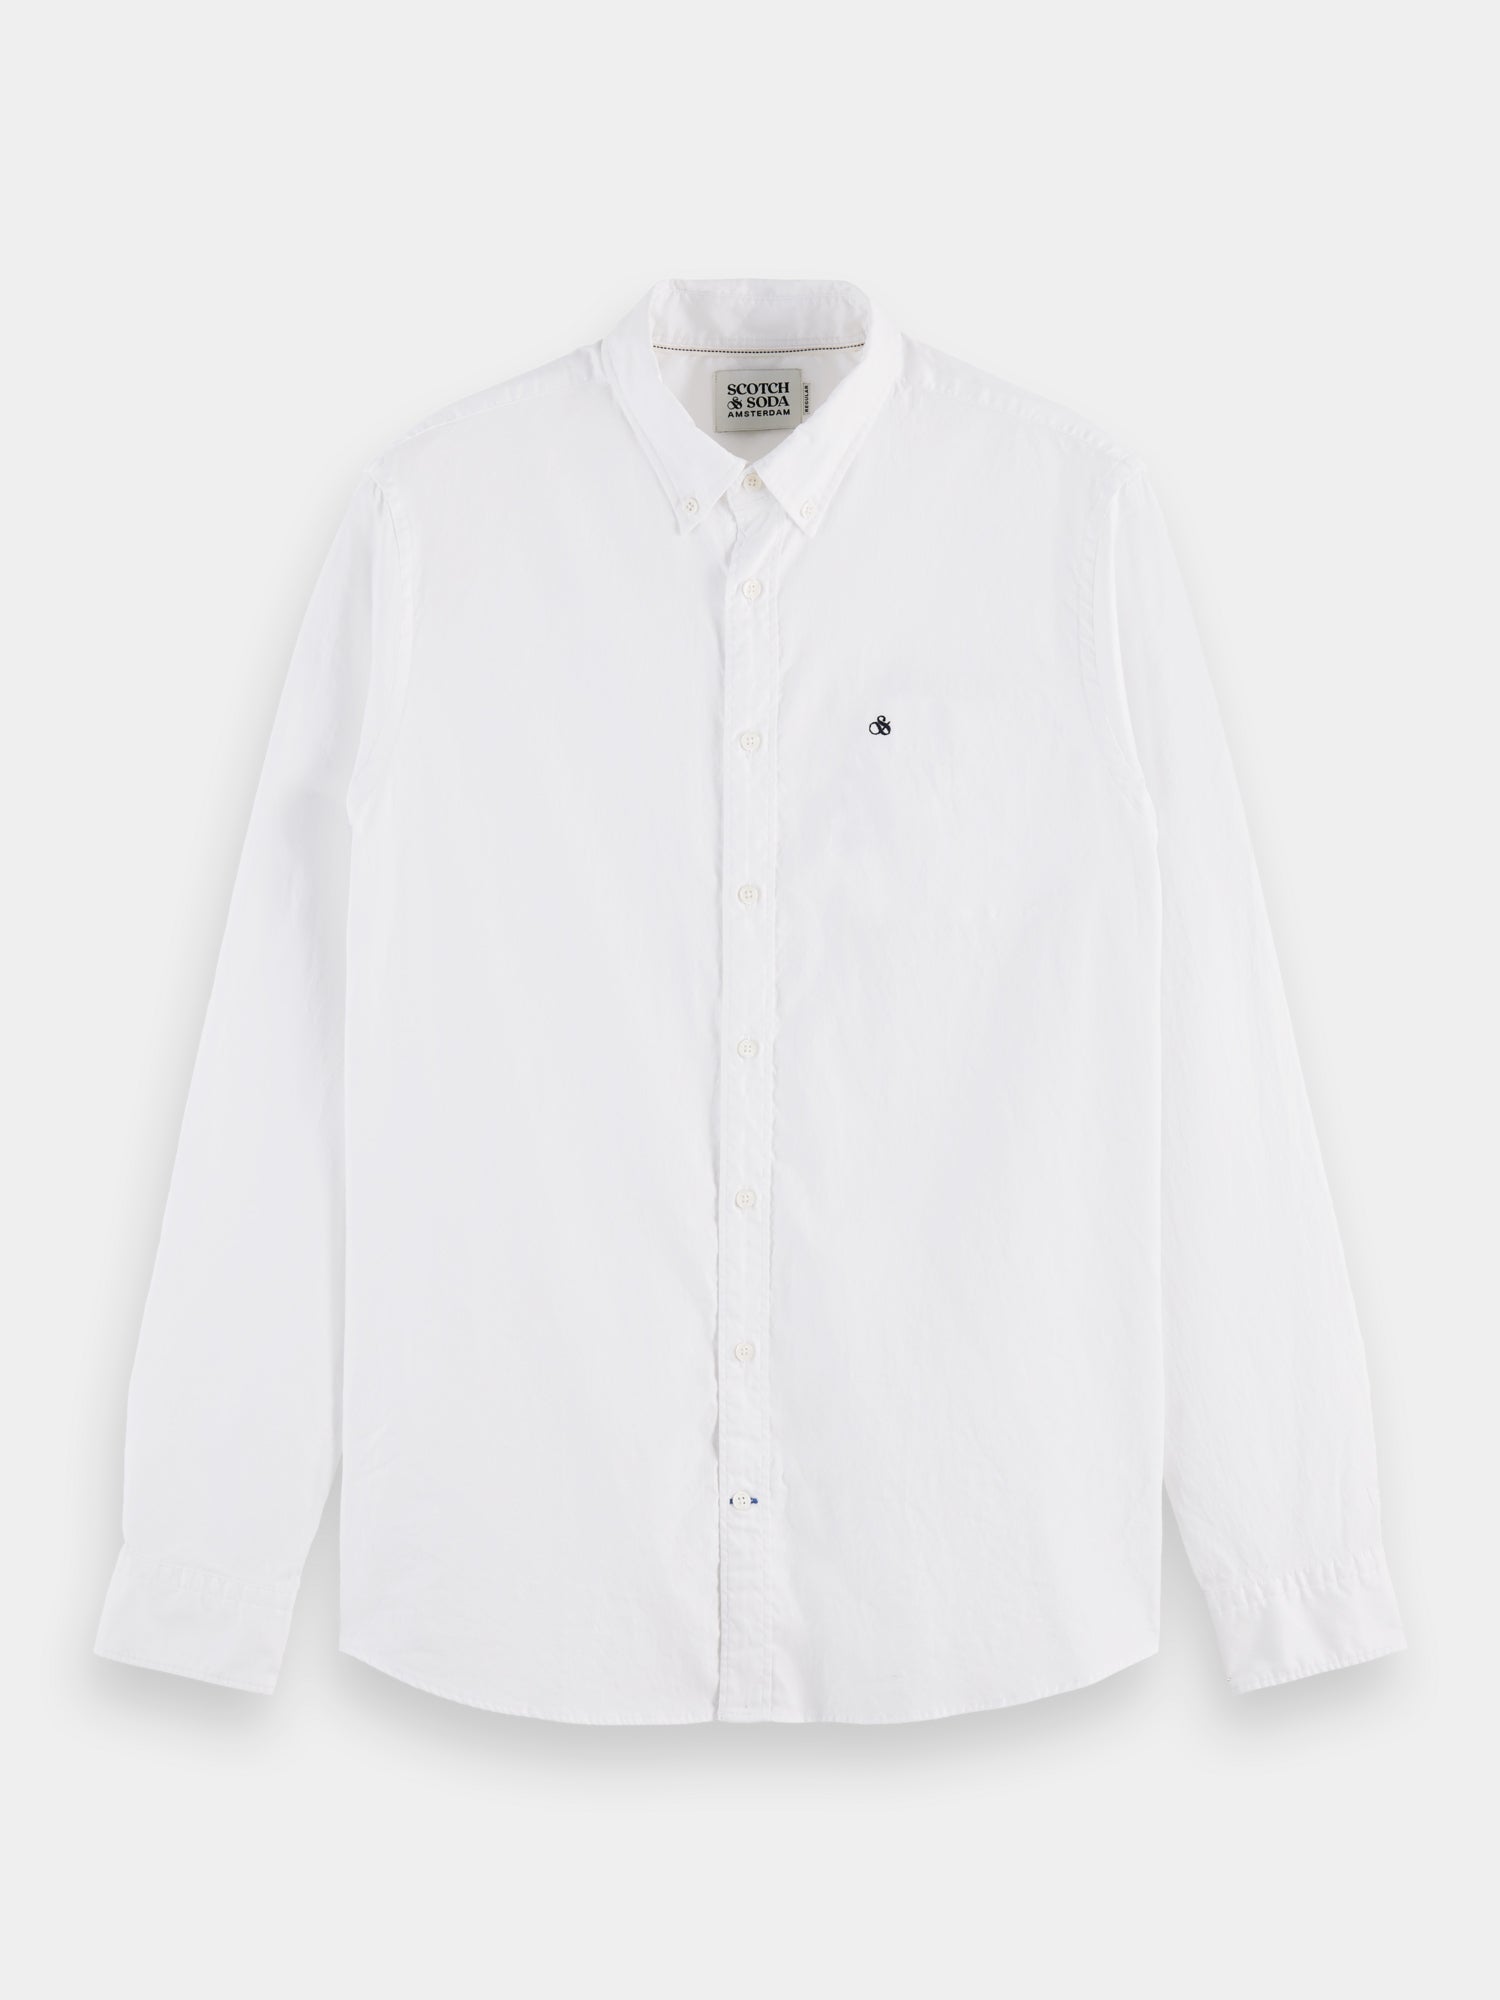 Organic cotton/elastane oxford shirt - White